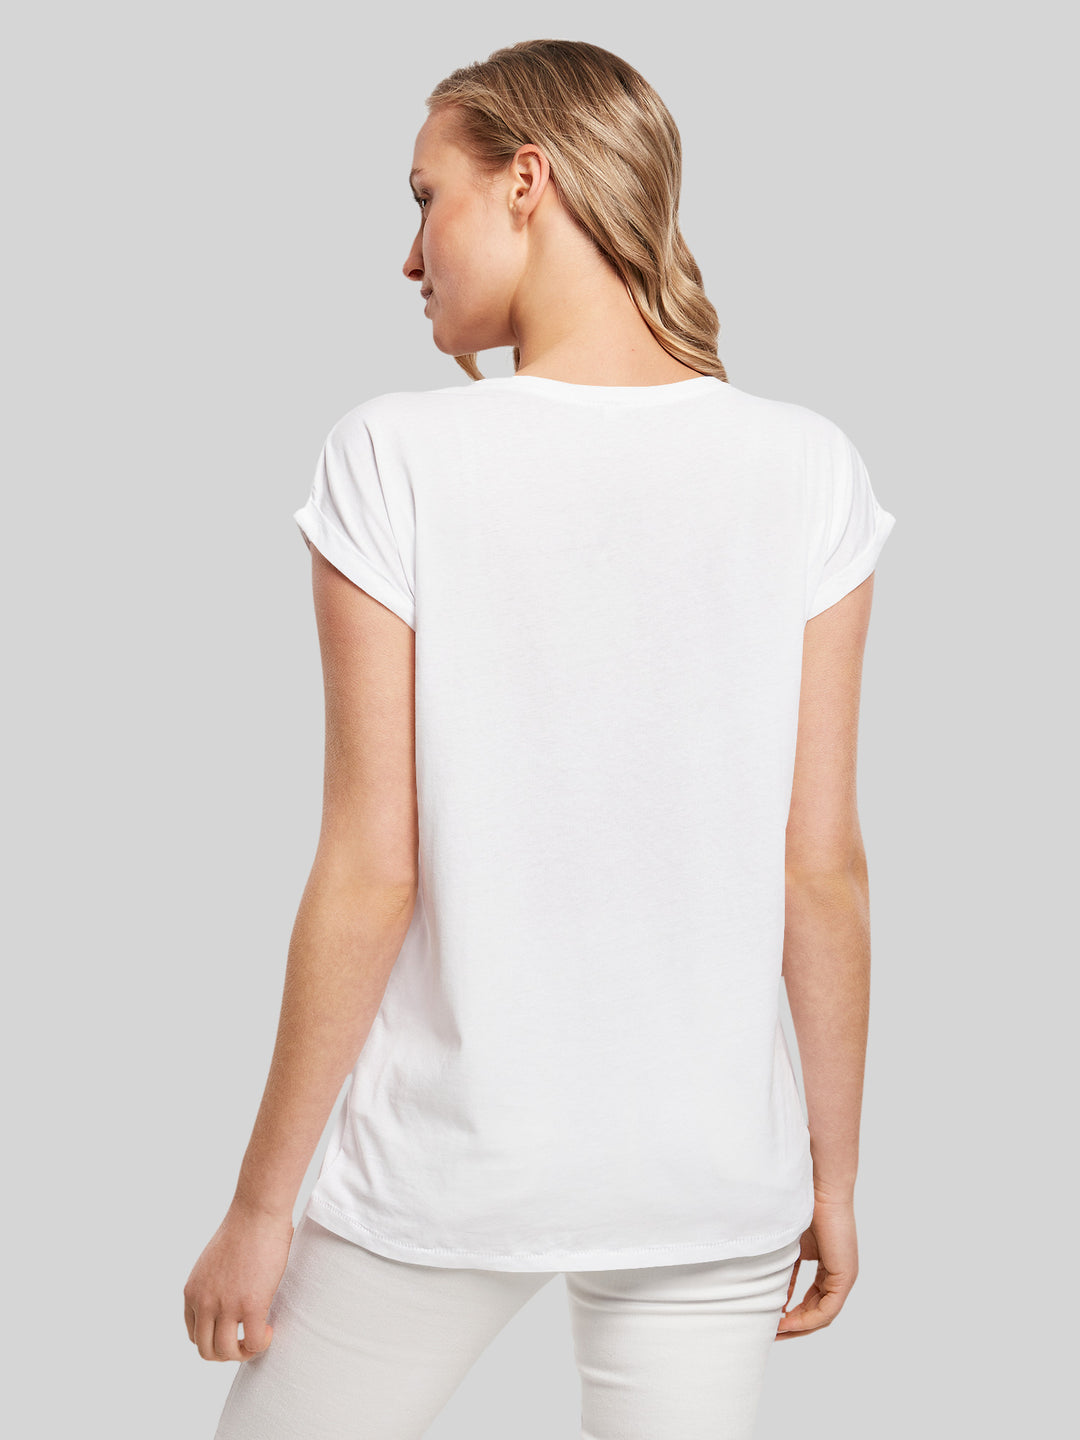 Queen T-Shirt | Classic Crest | Premium Kurzarm Damen T Shirt